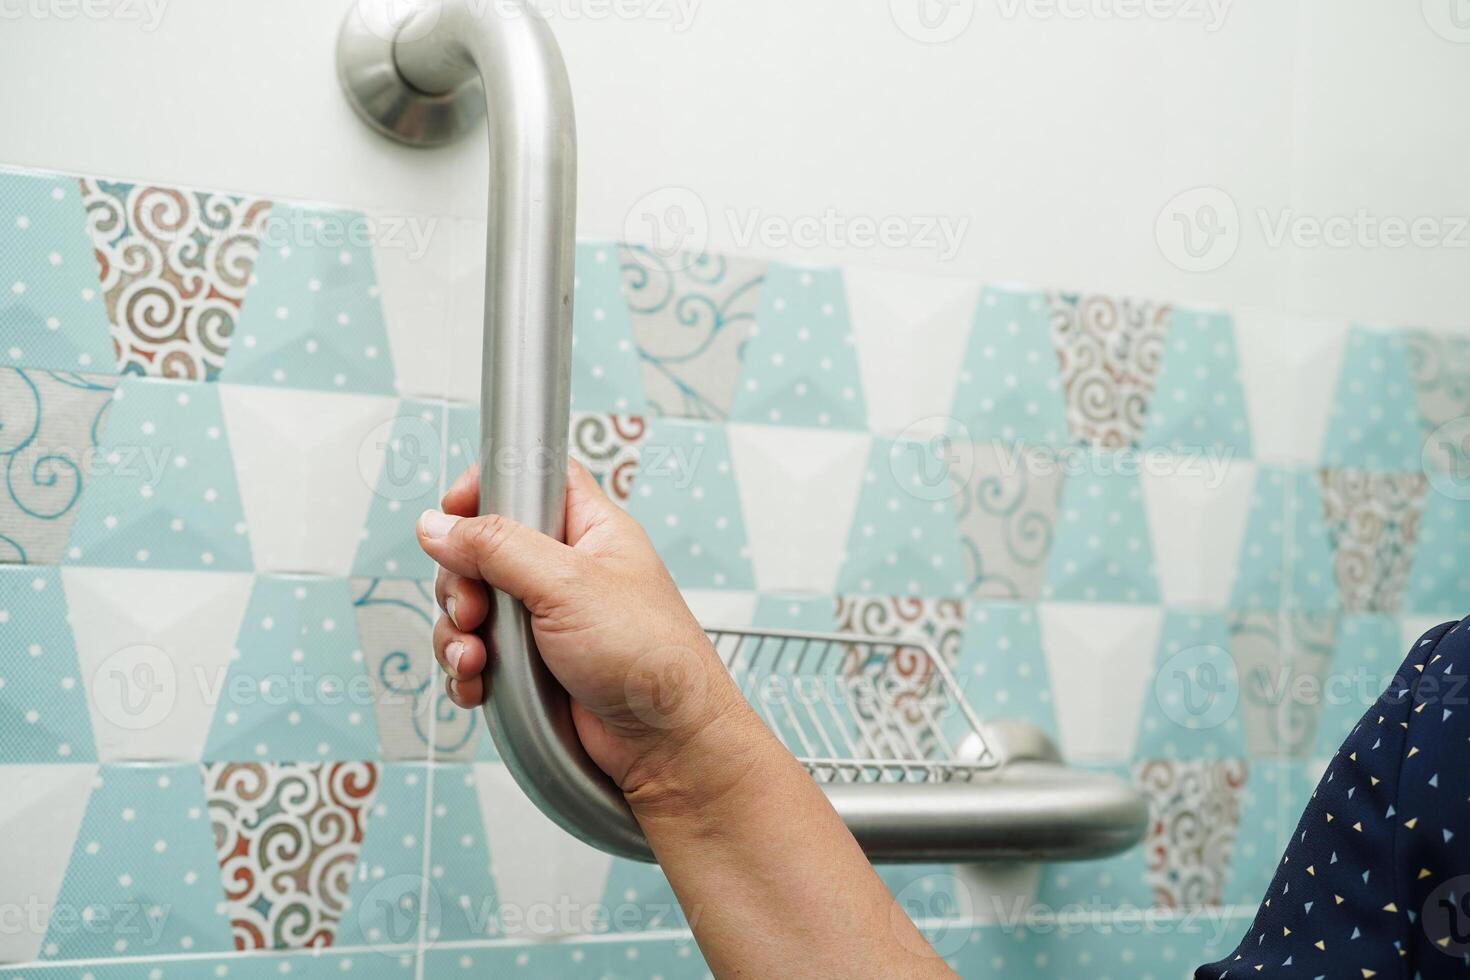 asiatisk kvinna patientanvändning toalettstödskena i badrummet, ledstångshandtag, säkerhet på vårdsjukhus. foto